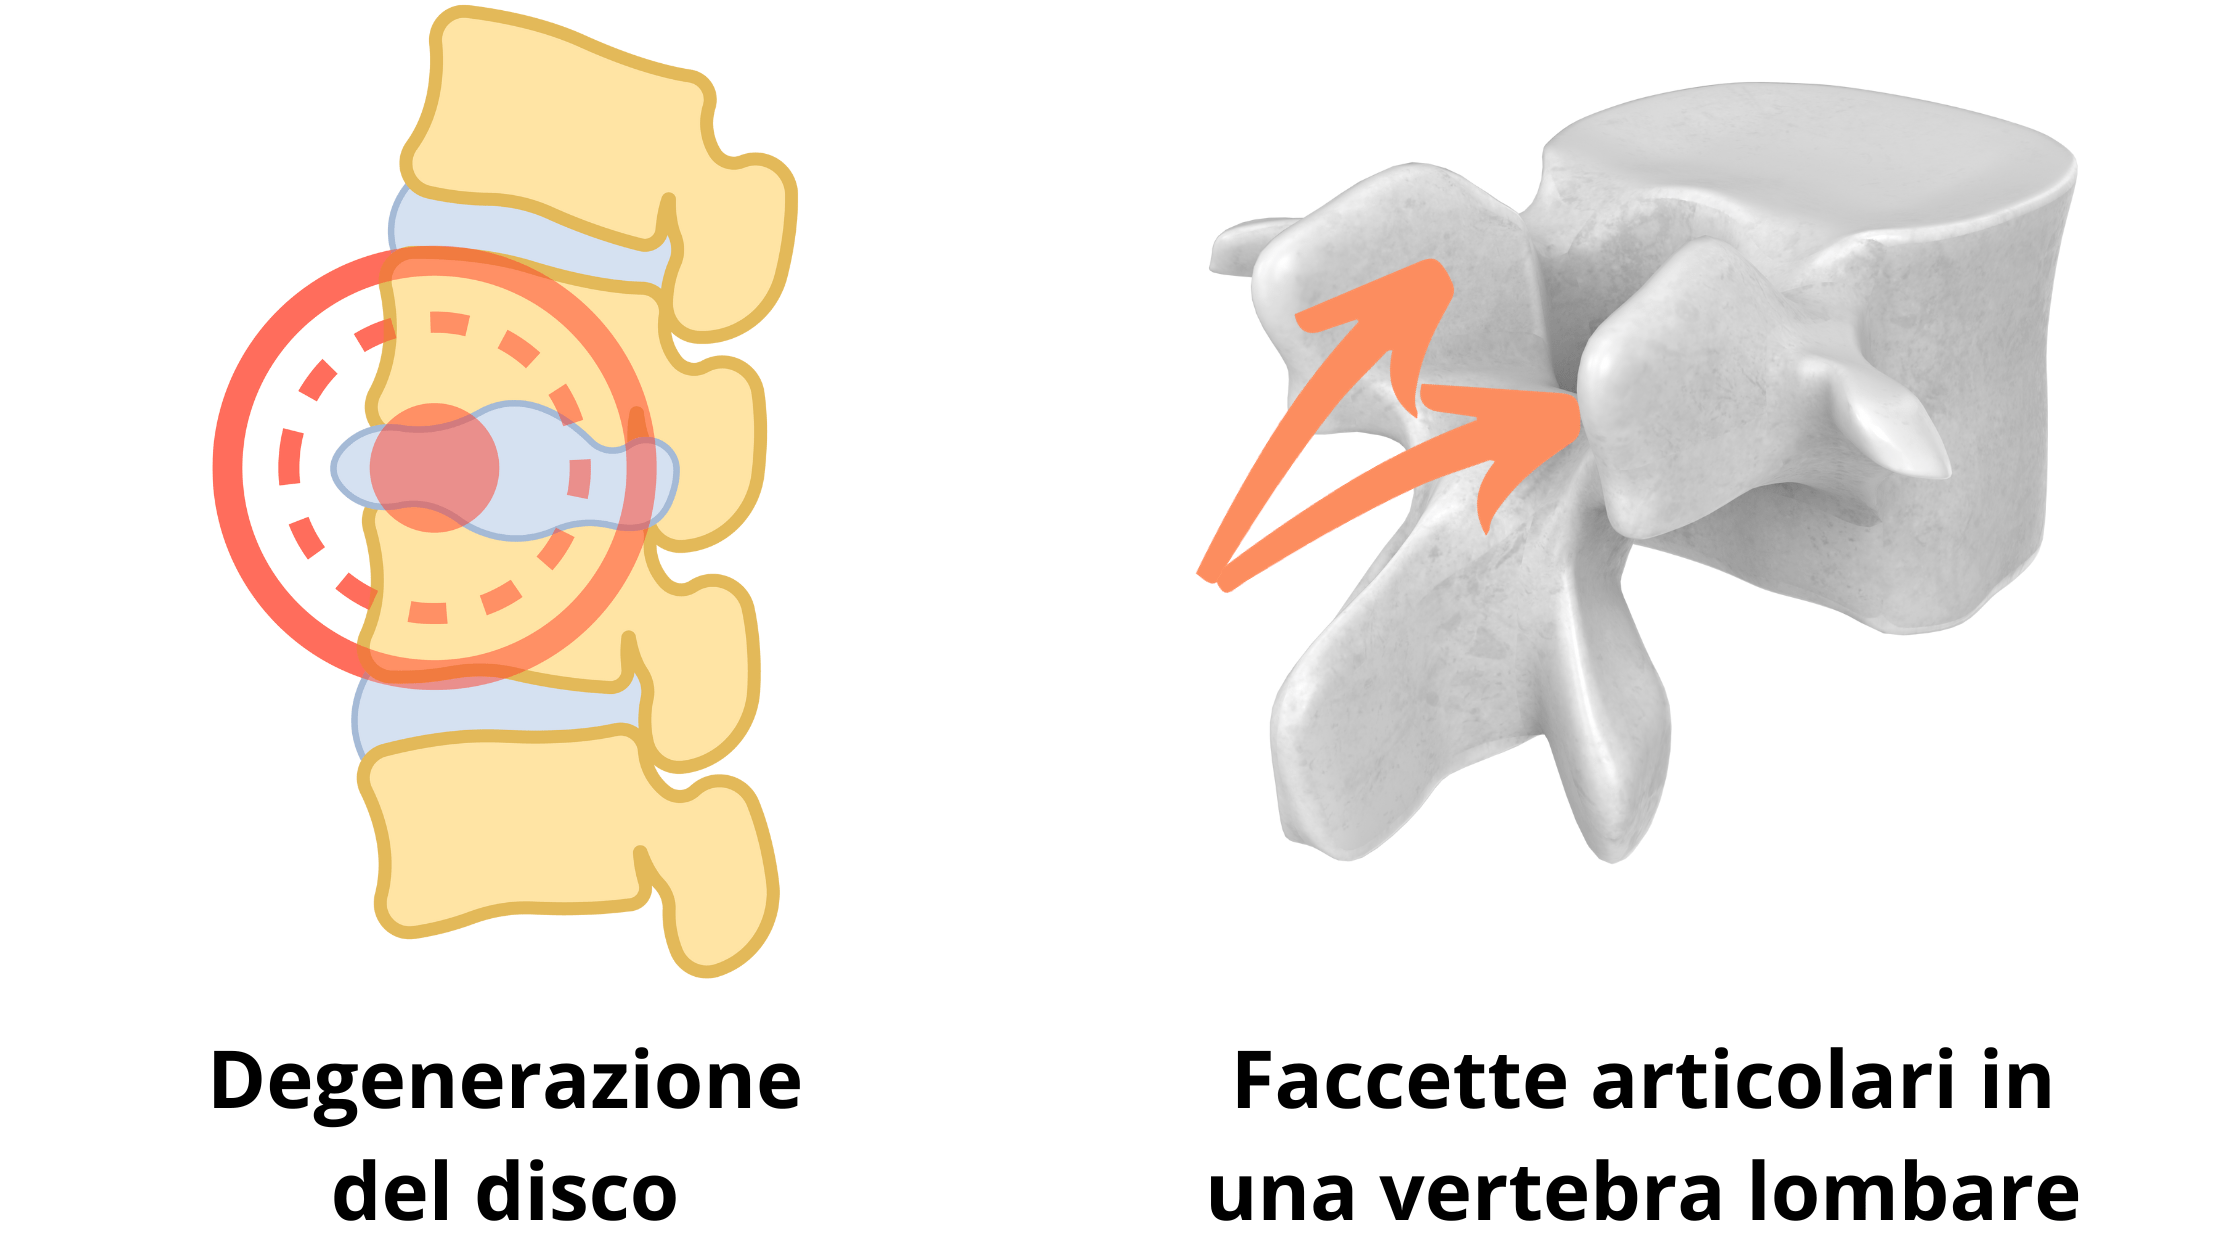 rappresentazione della degenerazione del disco intervertebrale dovuto all'instabilità dei segmenti ossei e le faccette articolari in una vertebra lombare